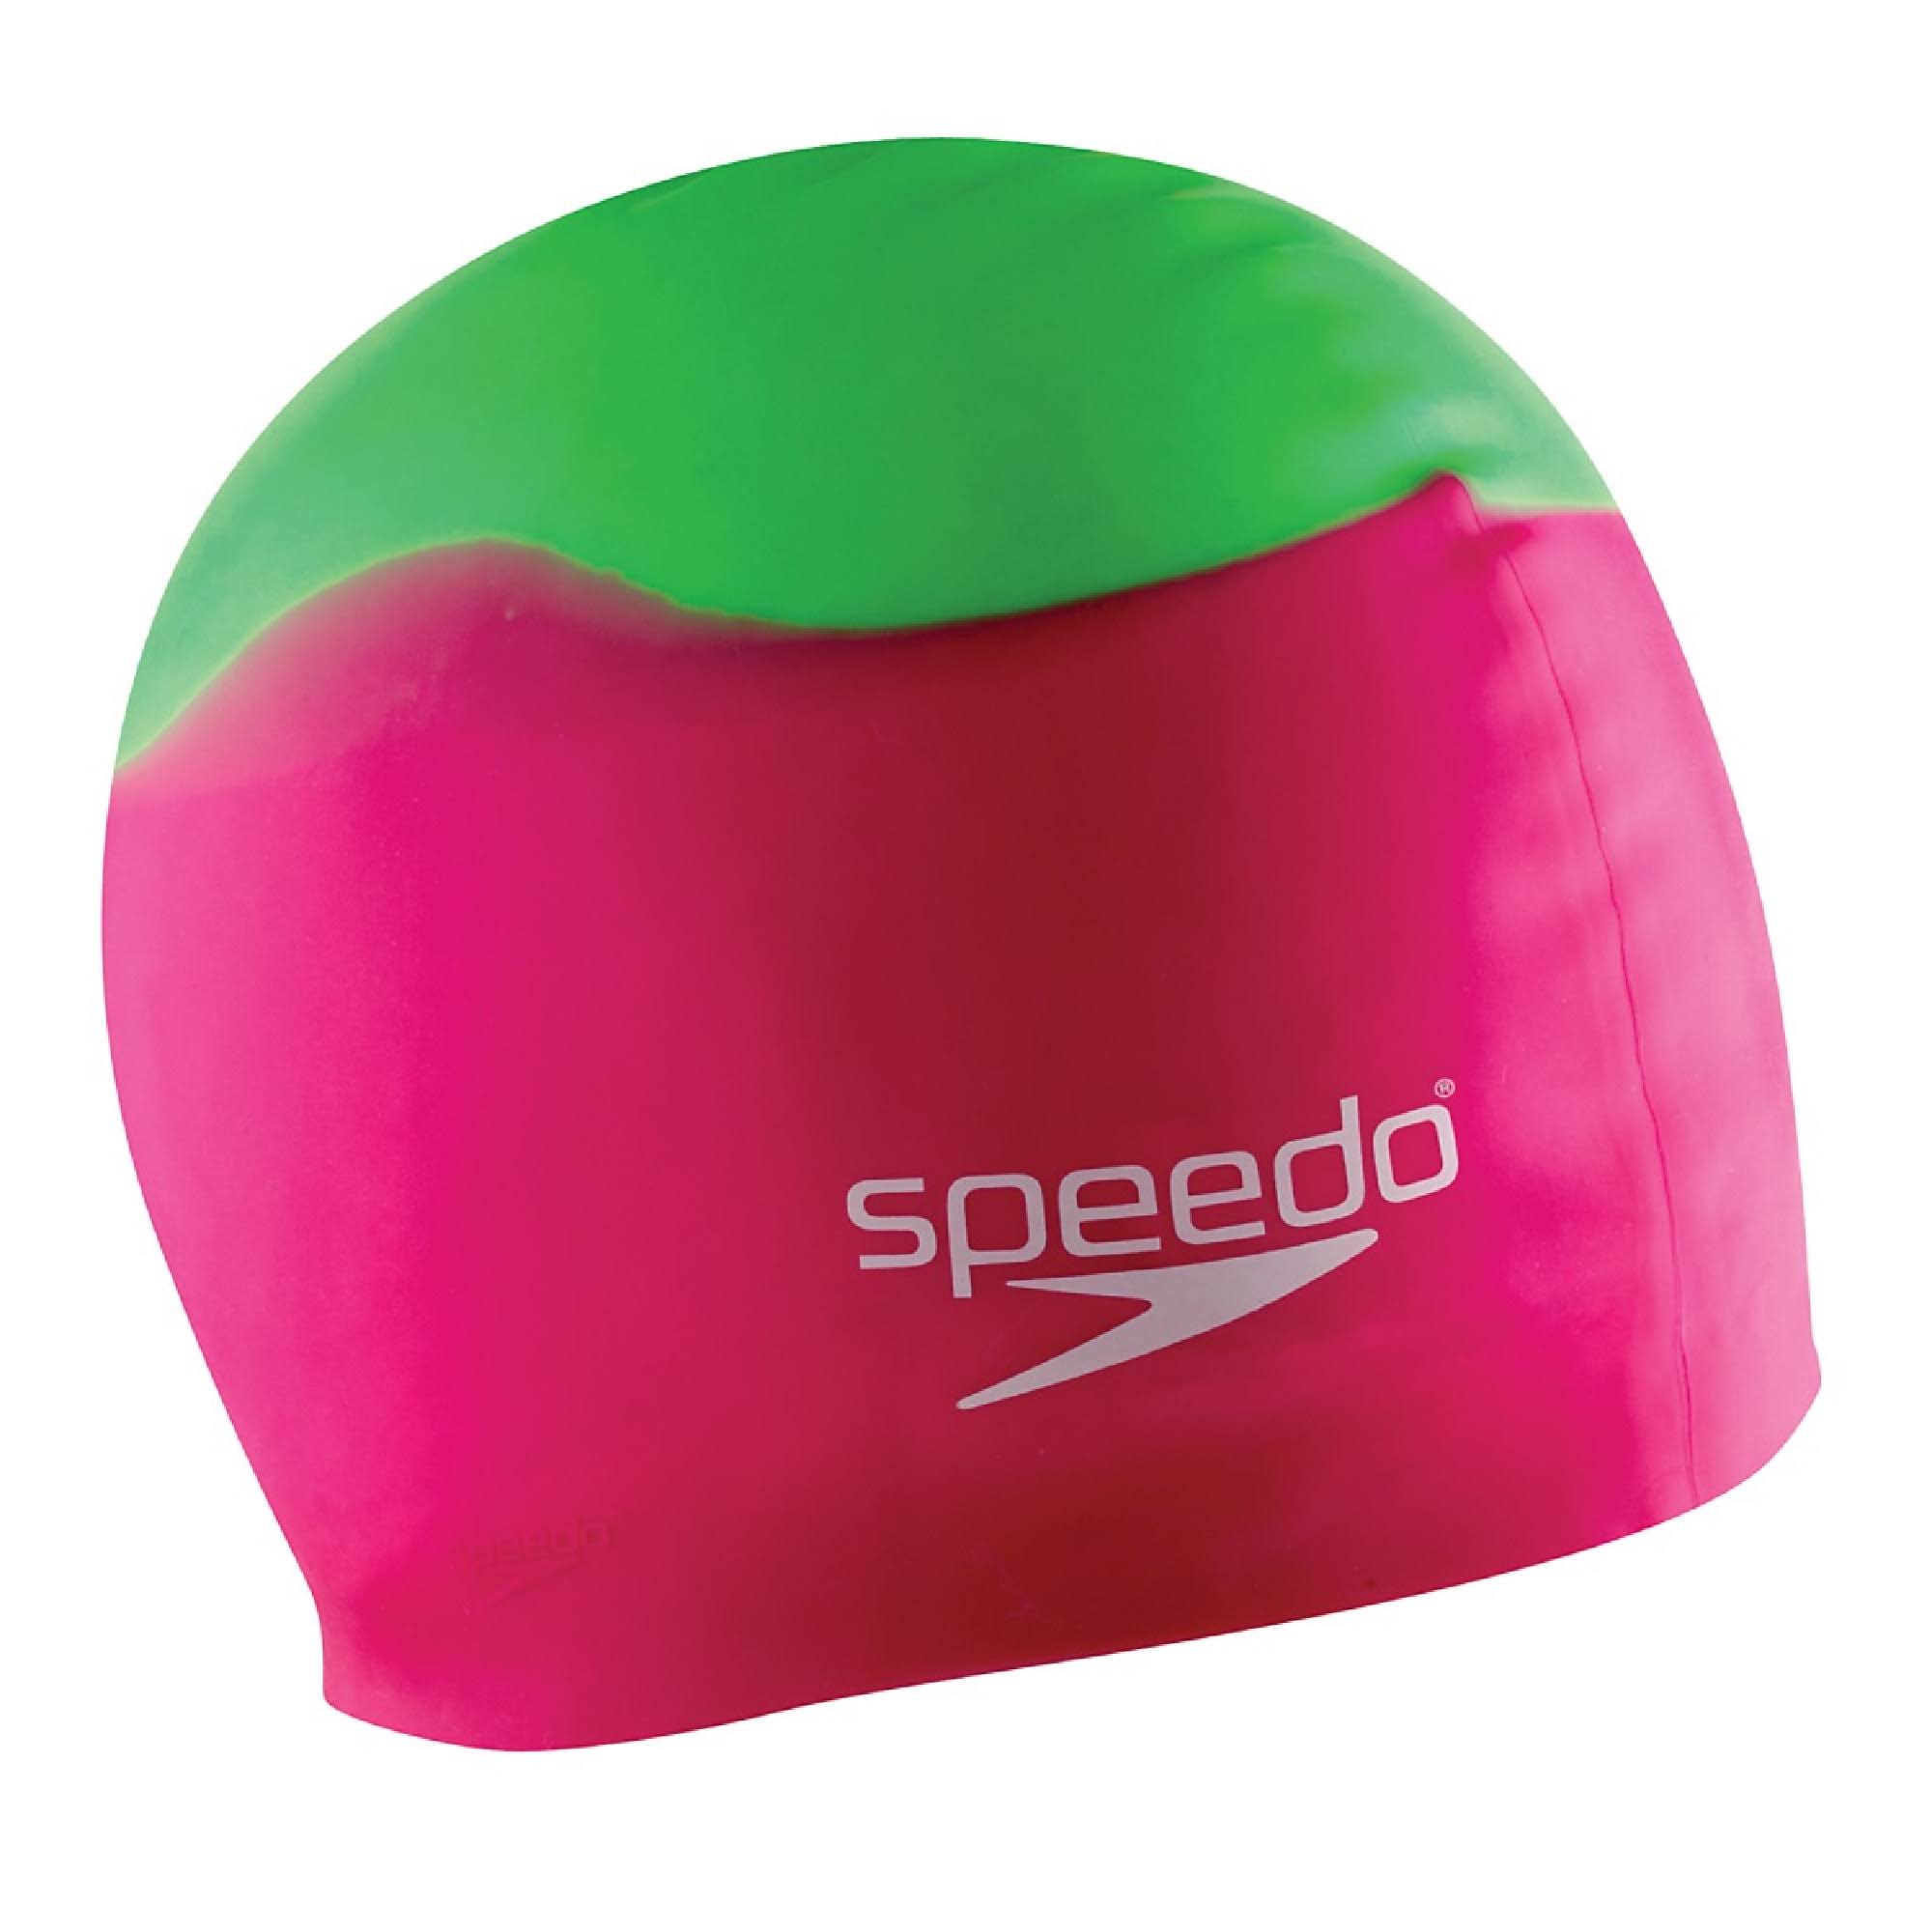 Speedo Swim Cap - Rainbow